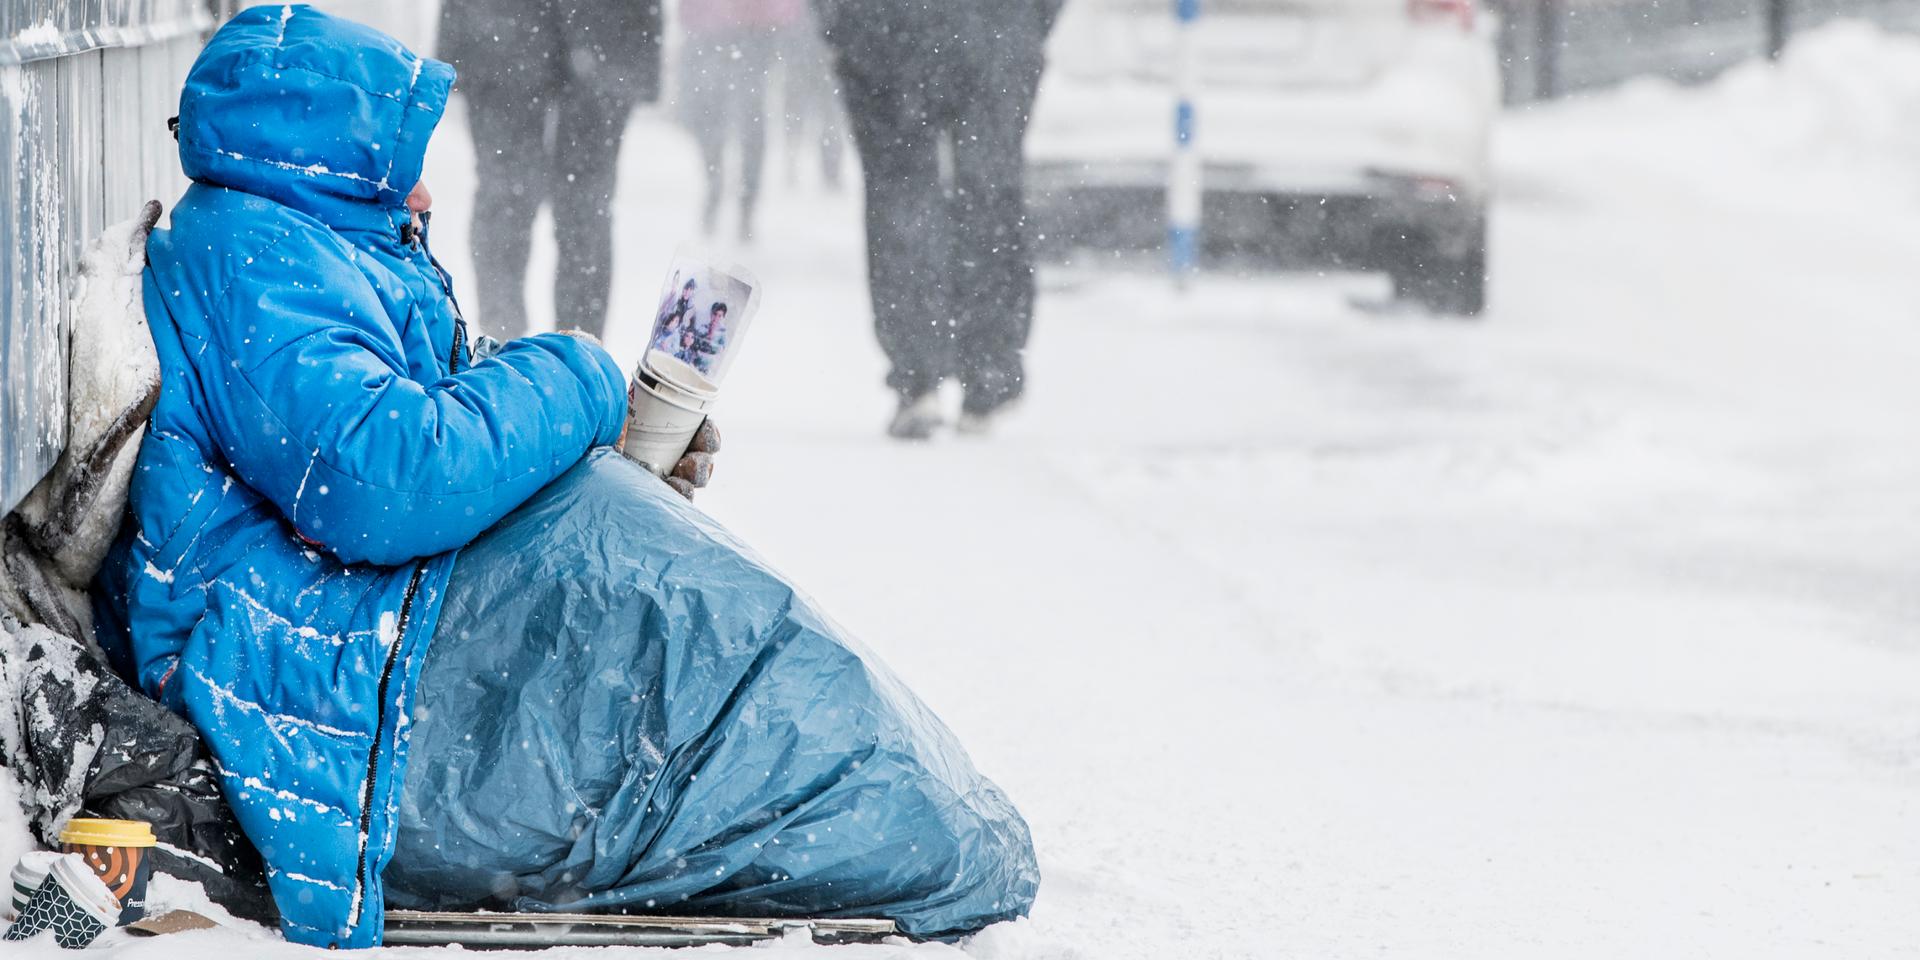 När det blir minusgrader riskerar hemlösa och andra utsatta att frysa ihjäl. Göteborgs stad förbereder nu övernattningsplatser för att kunna hjälpa dem.